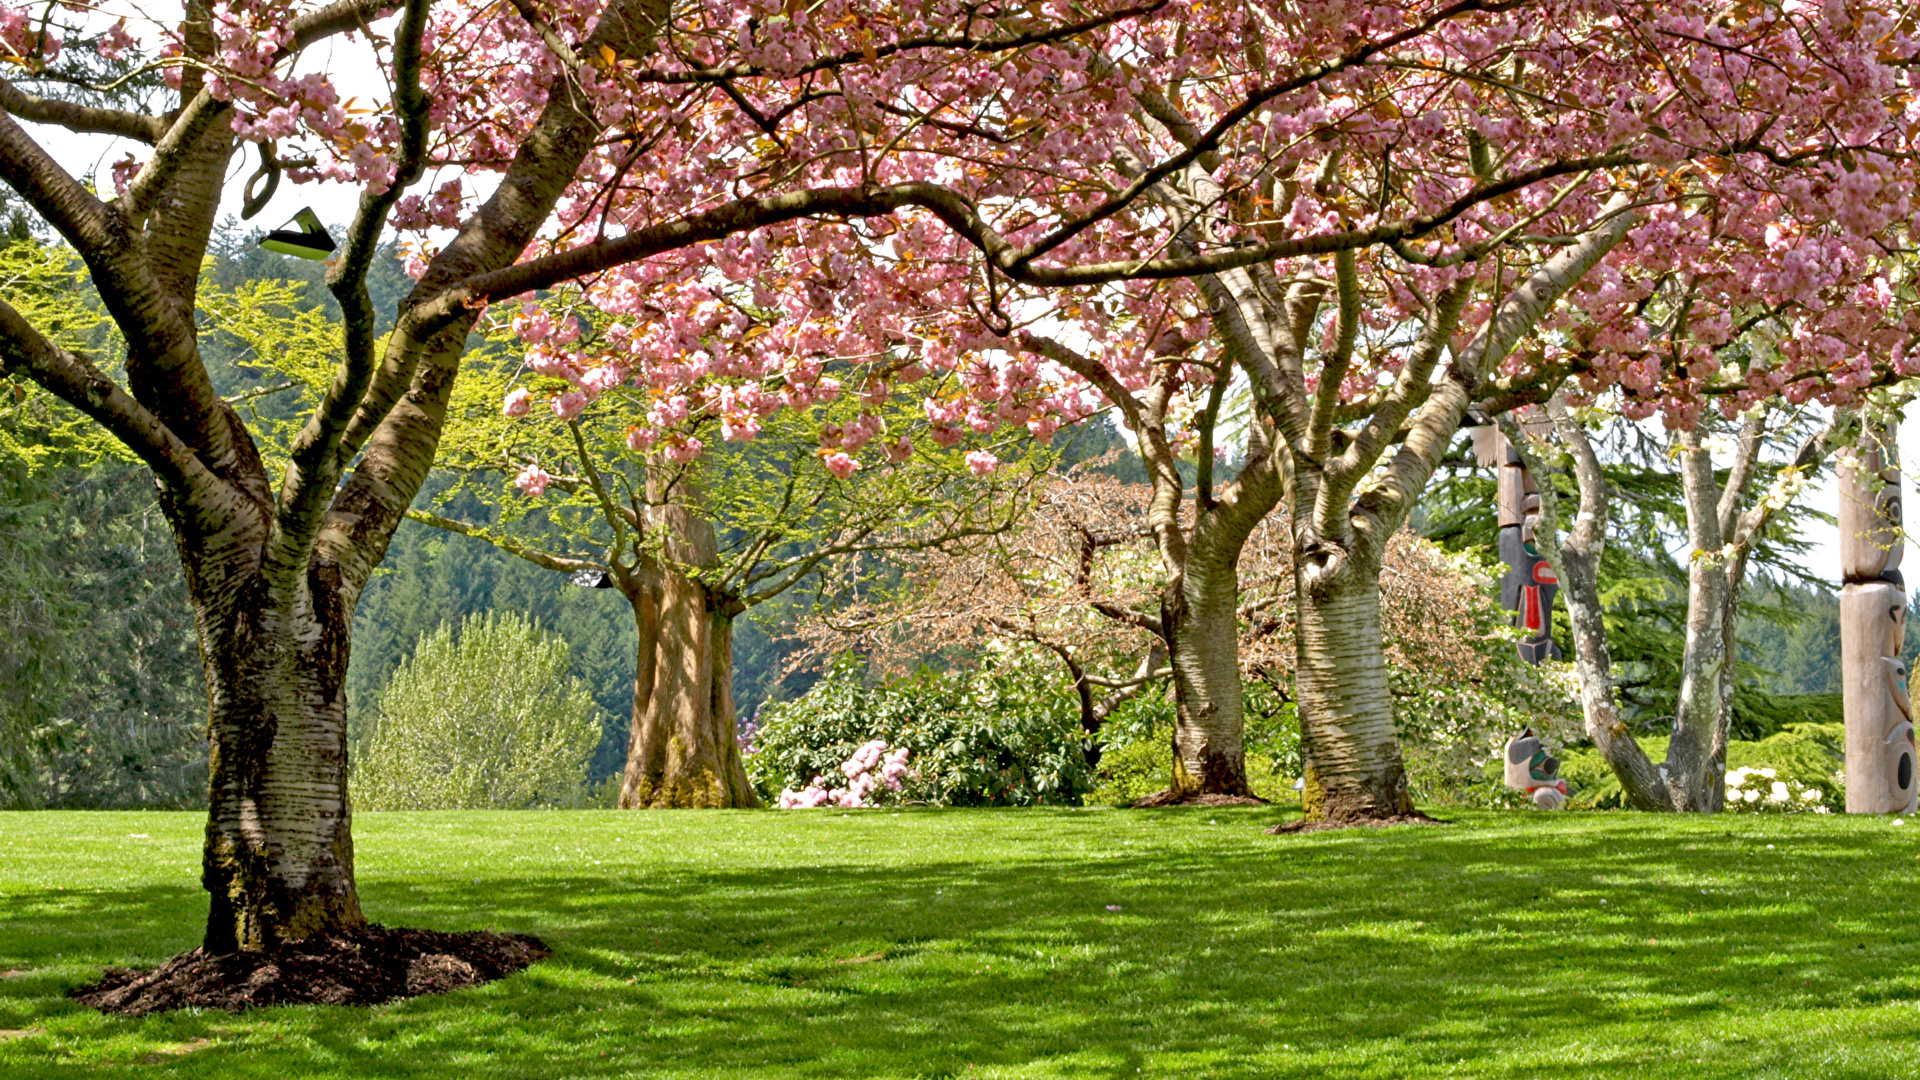 Fondos De Pantalla 1920x1080 Parque Primavera Floración De árboles